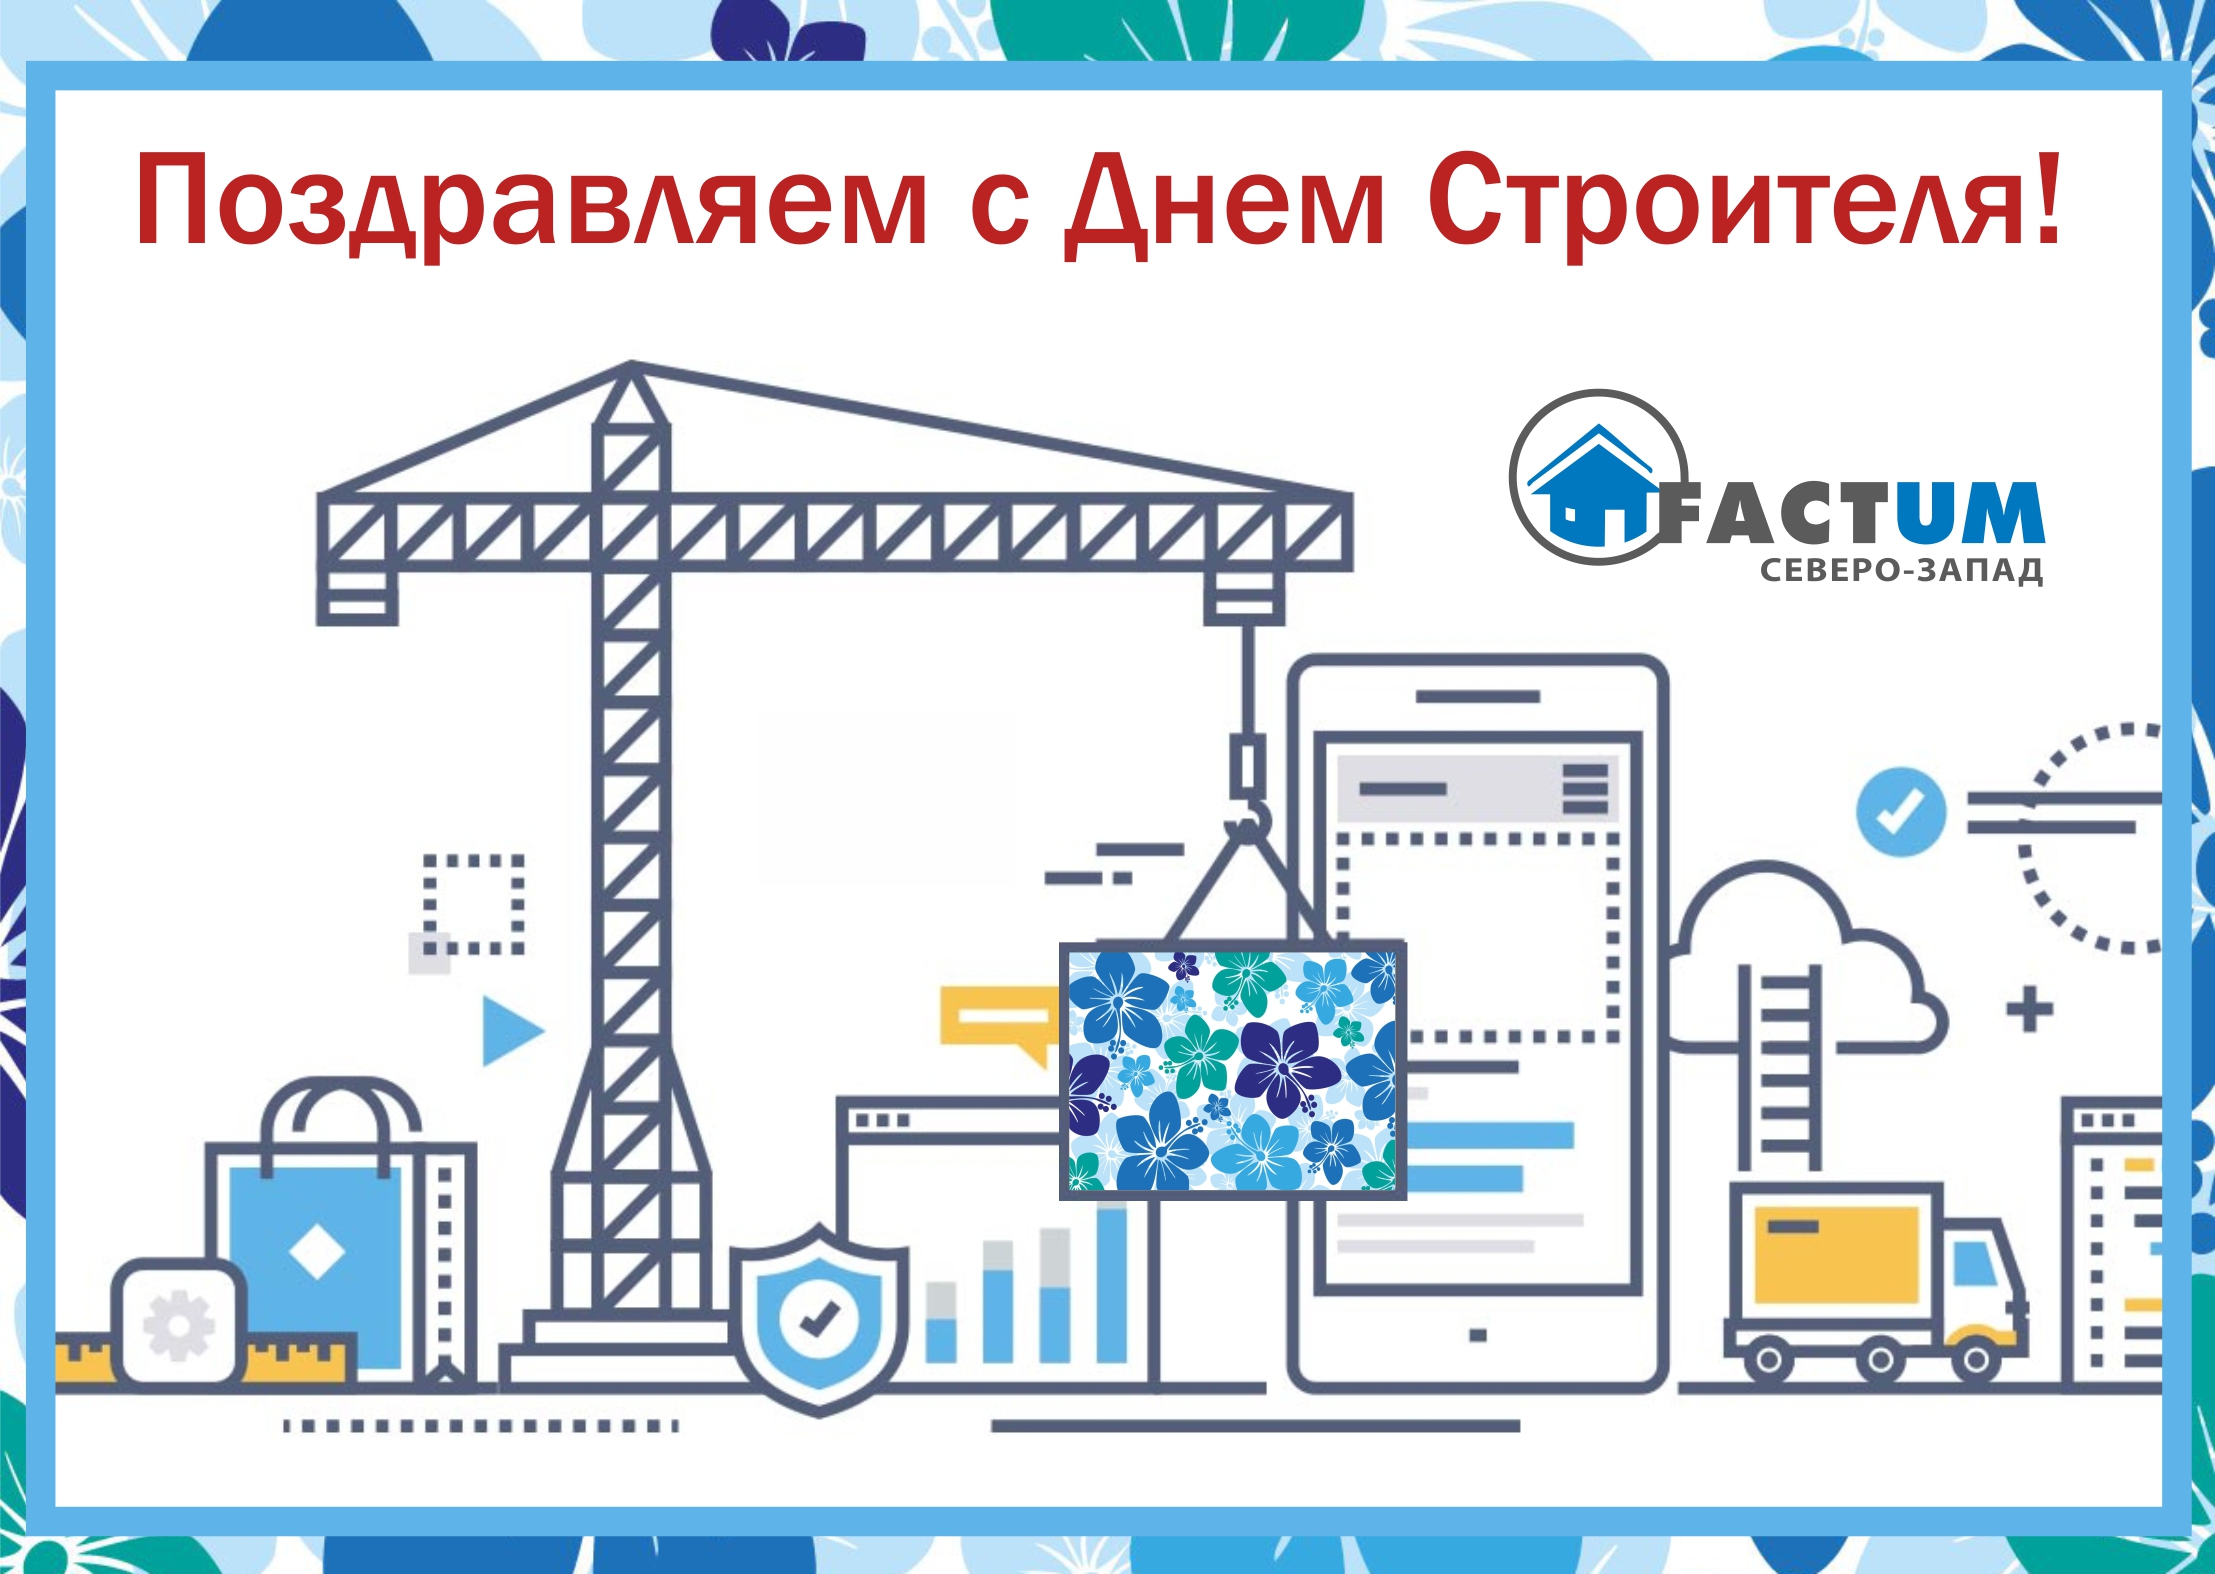 2 Компания «Фактум Северо-Запад», Санкт-Петербург | Новости